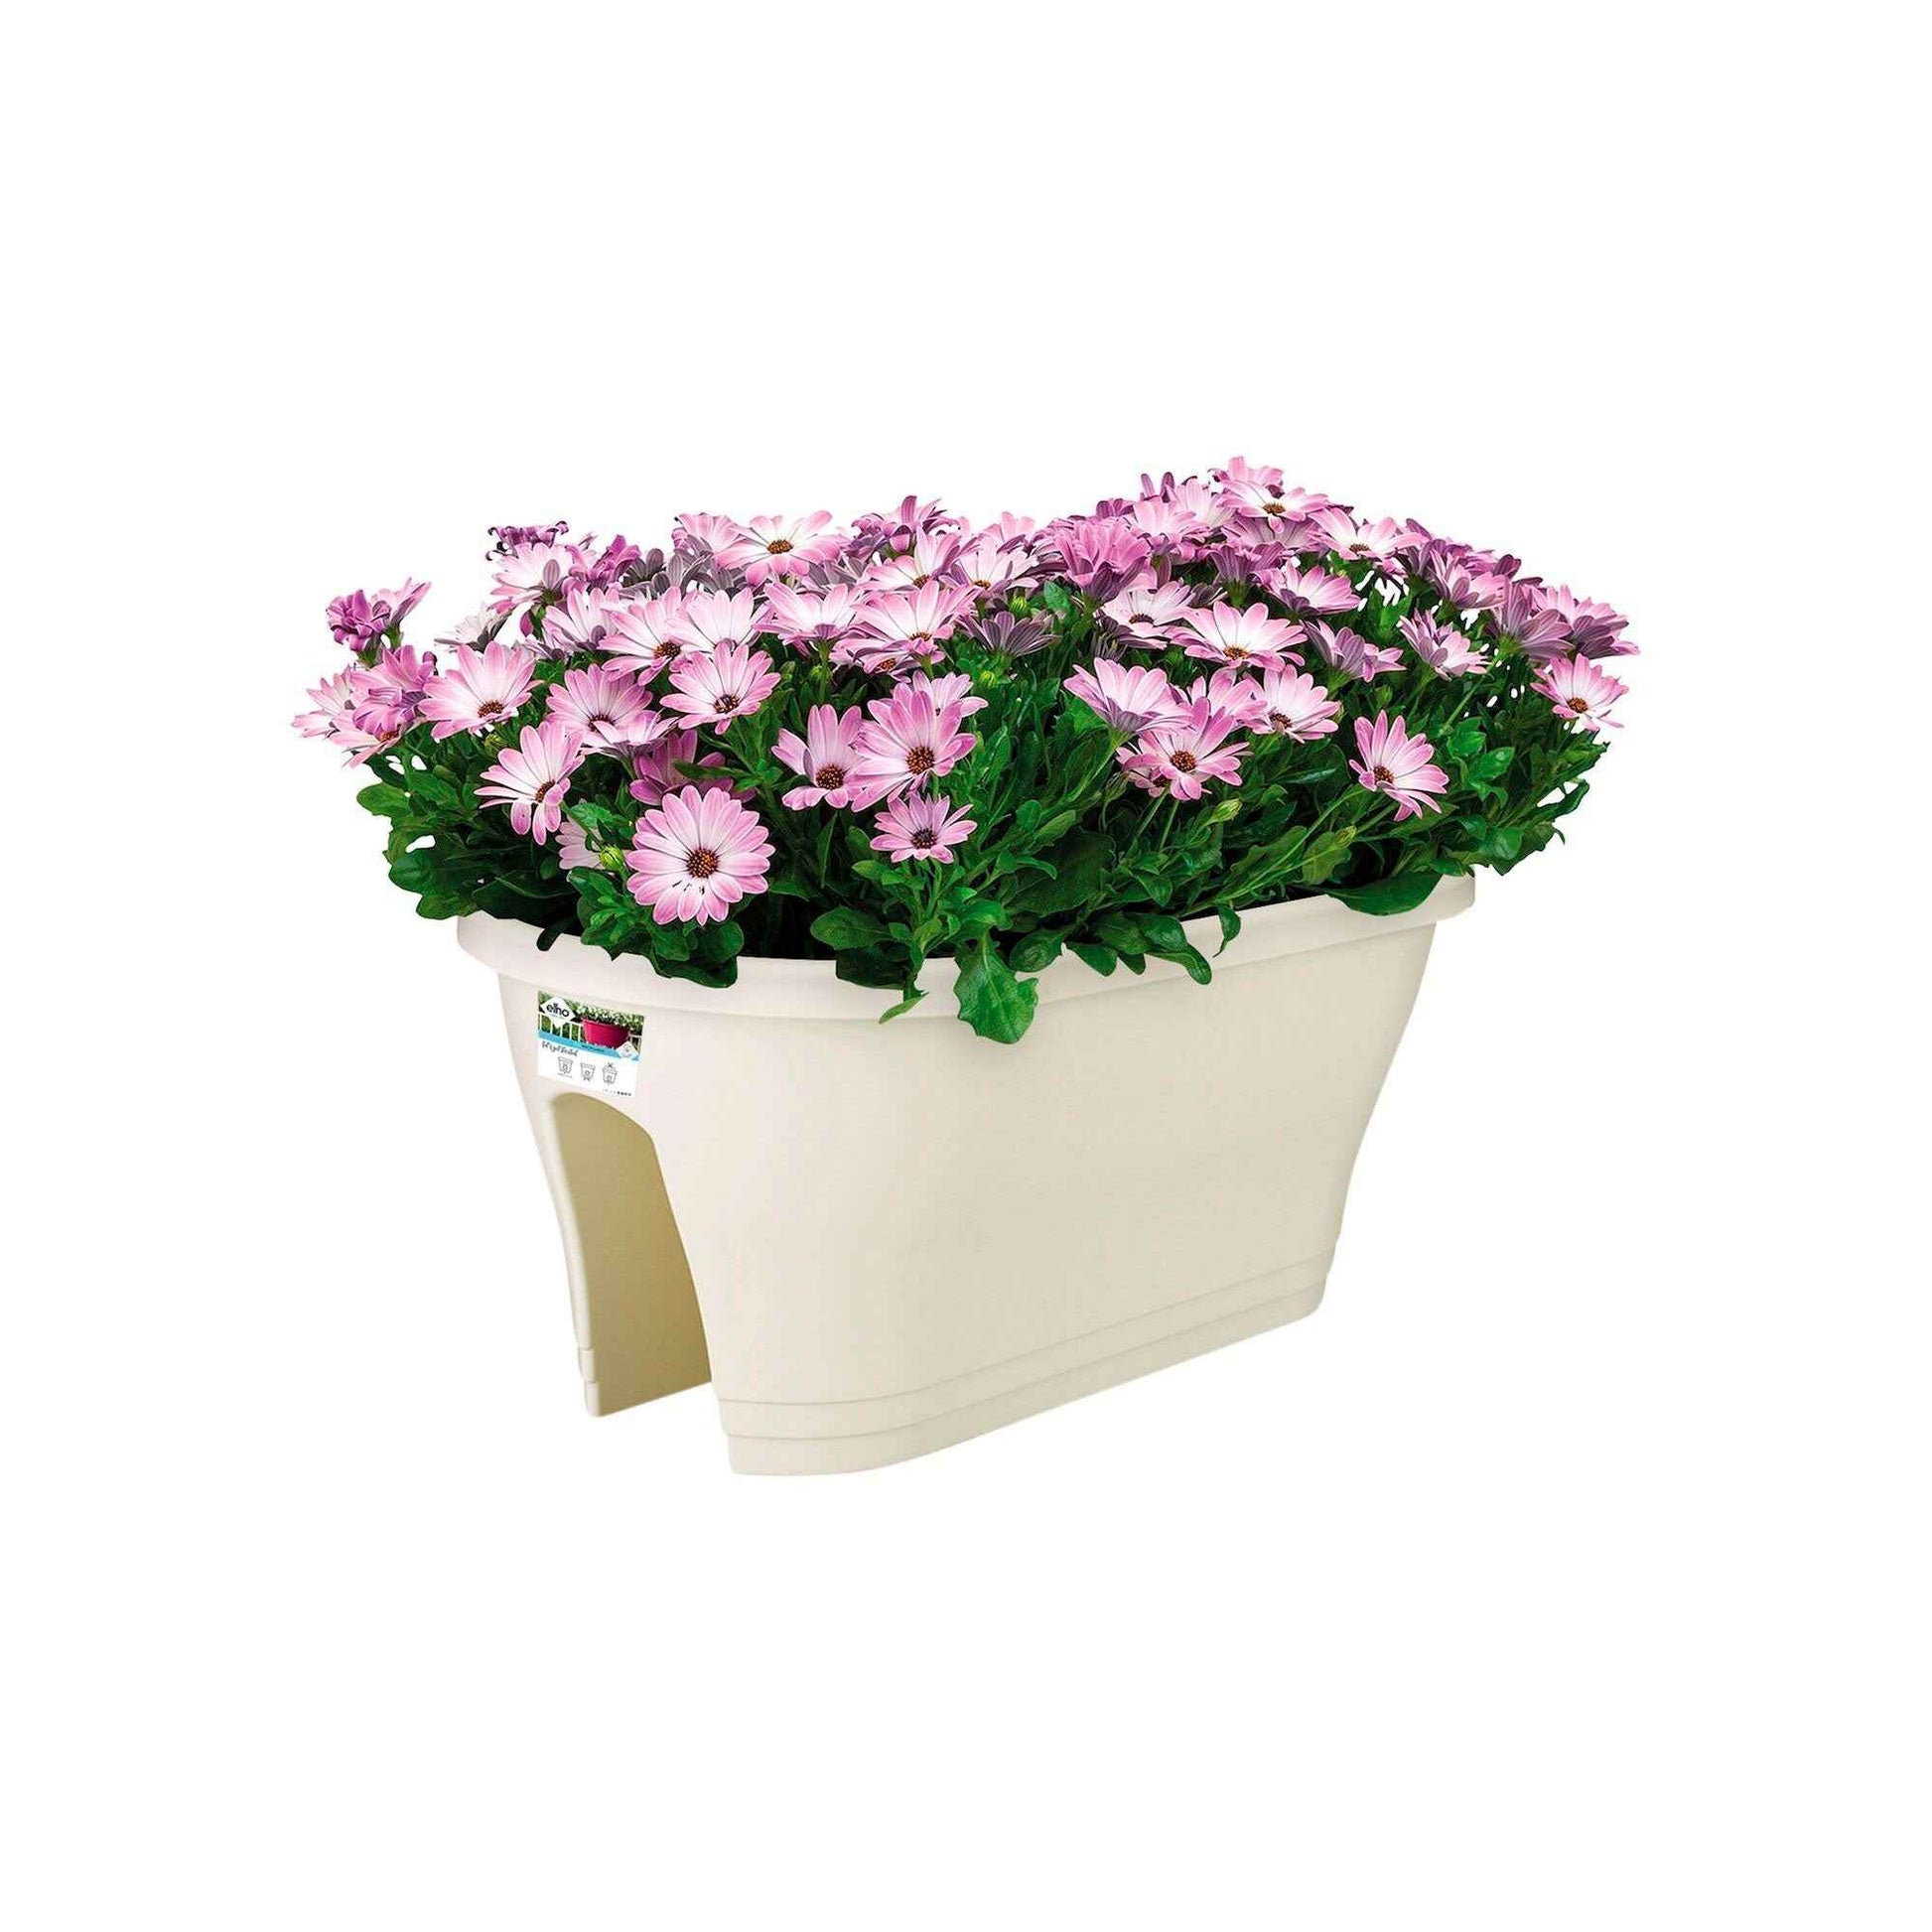 Elho jardinière Corsica flower bridge ovale blanc - Pot pour l'extérieur - Grands pots de fleurs